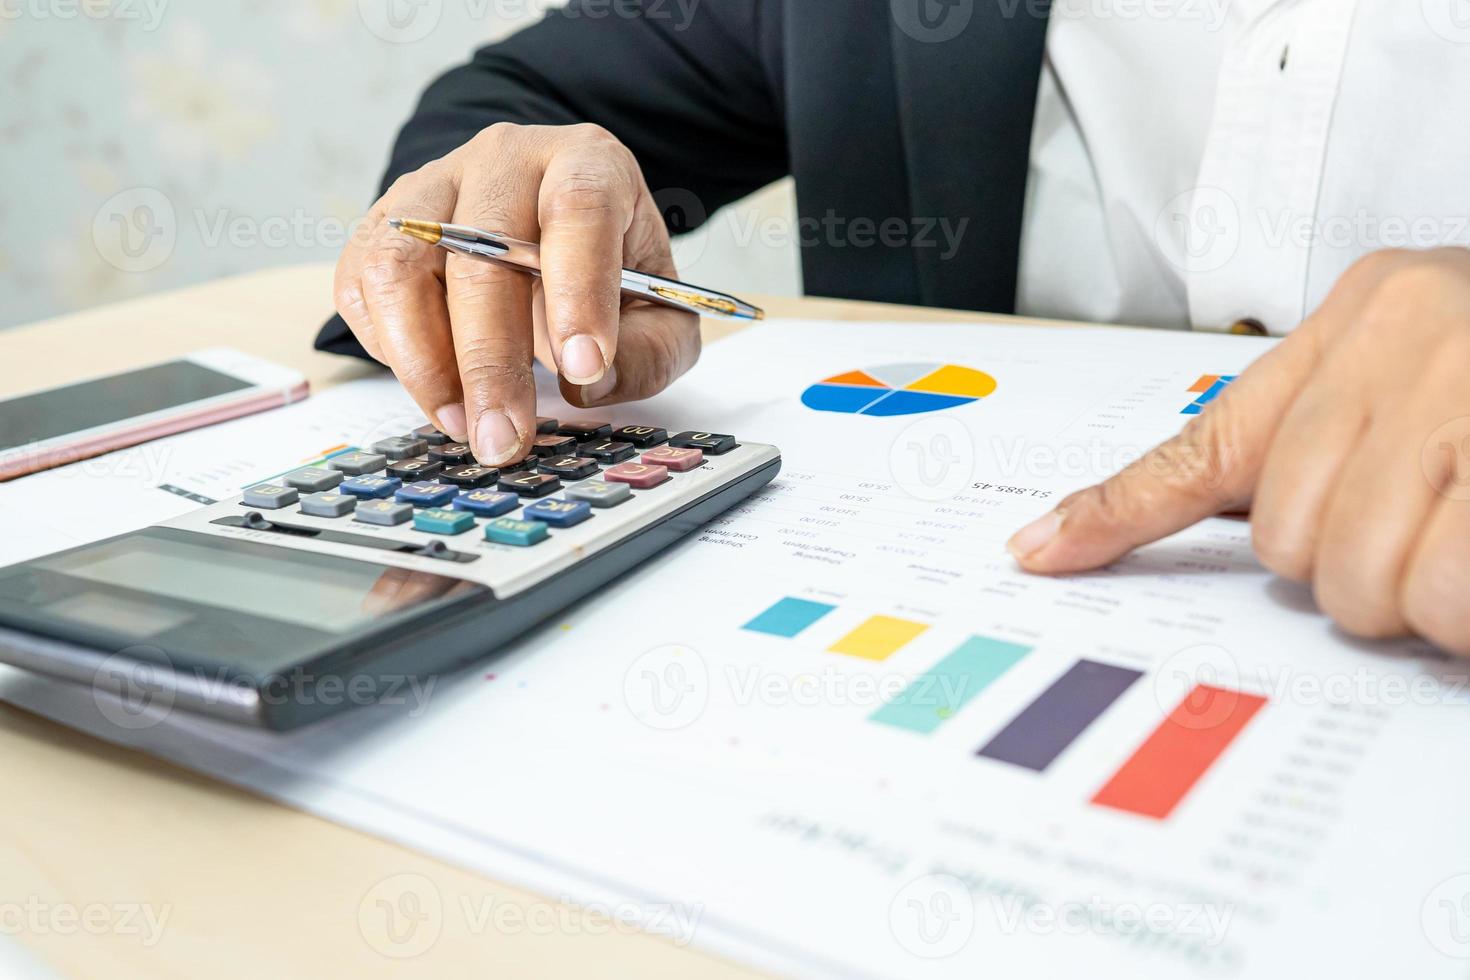 comptable asiatique travaillant et analysant la comptabilité du projet de rapports financiers avec graphique graphique et calculatrice dans un concept de bureau, de finance et d'entreprise moderne. photo